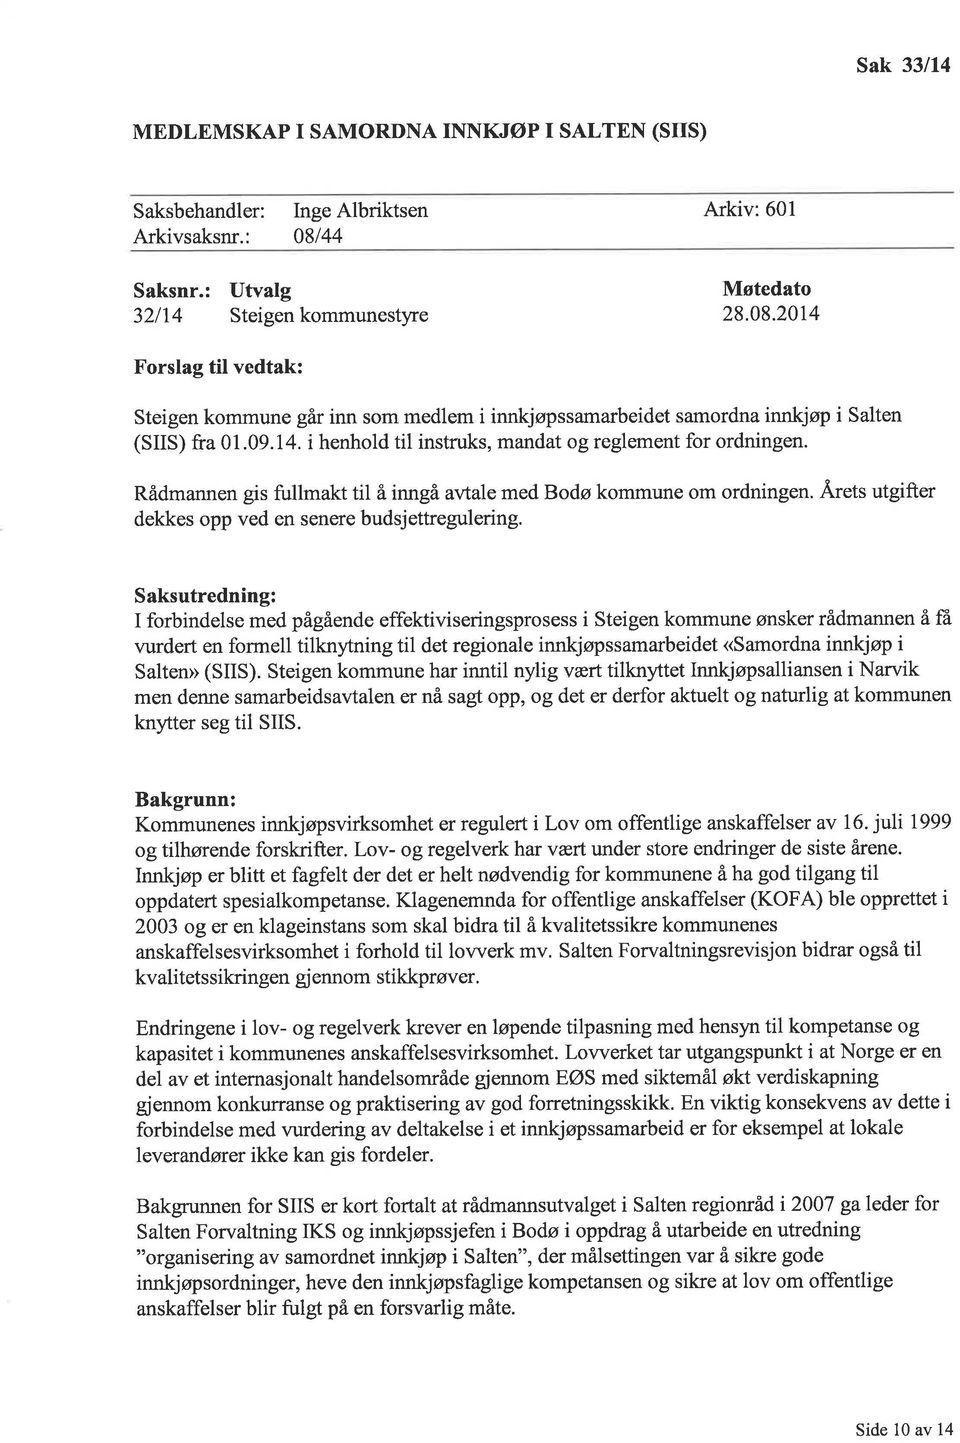 Rådmannen gis fullmakt til å inngå avtale med Bodø kommune om ordningen. Ä.rets utgifter dekkes opp ved sn senere budsjettregulering.